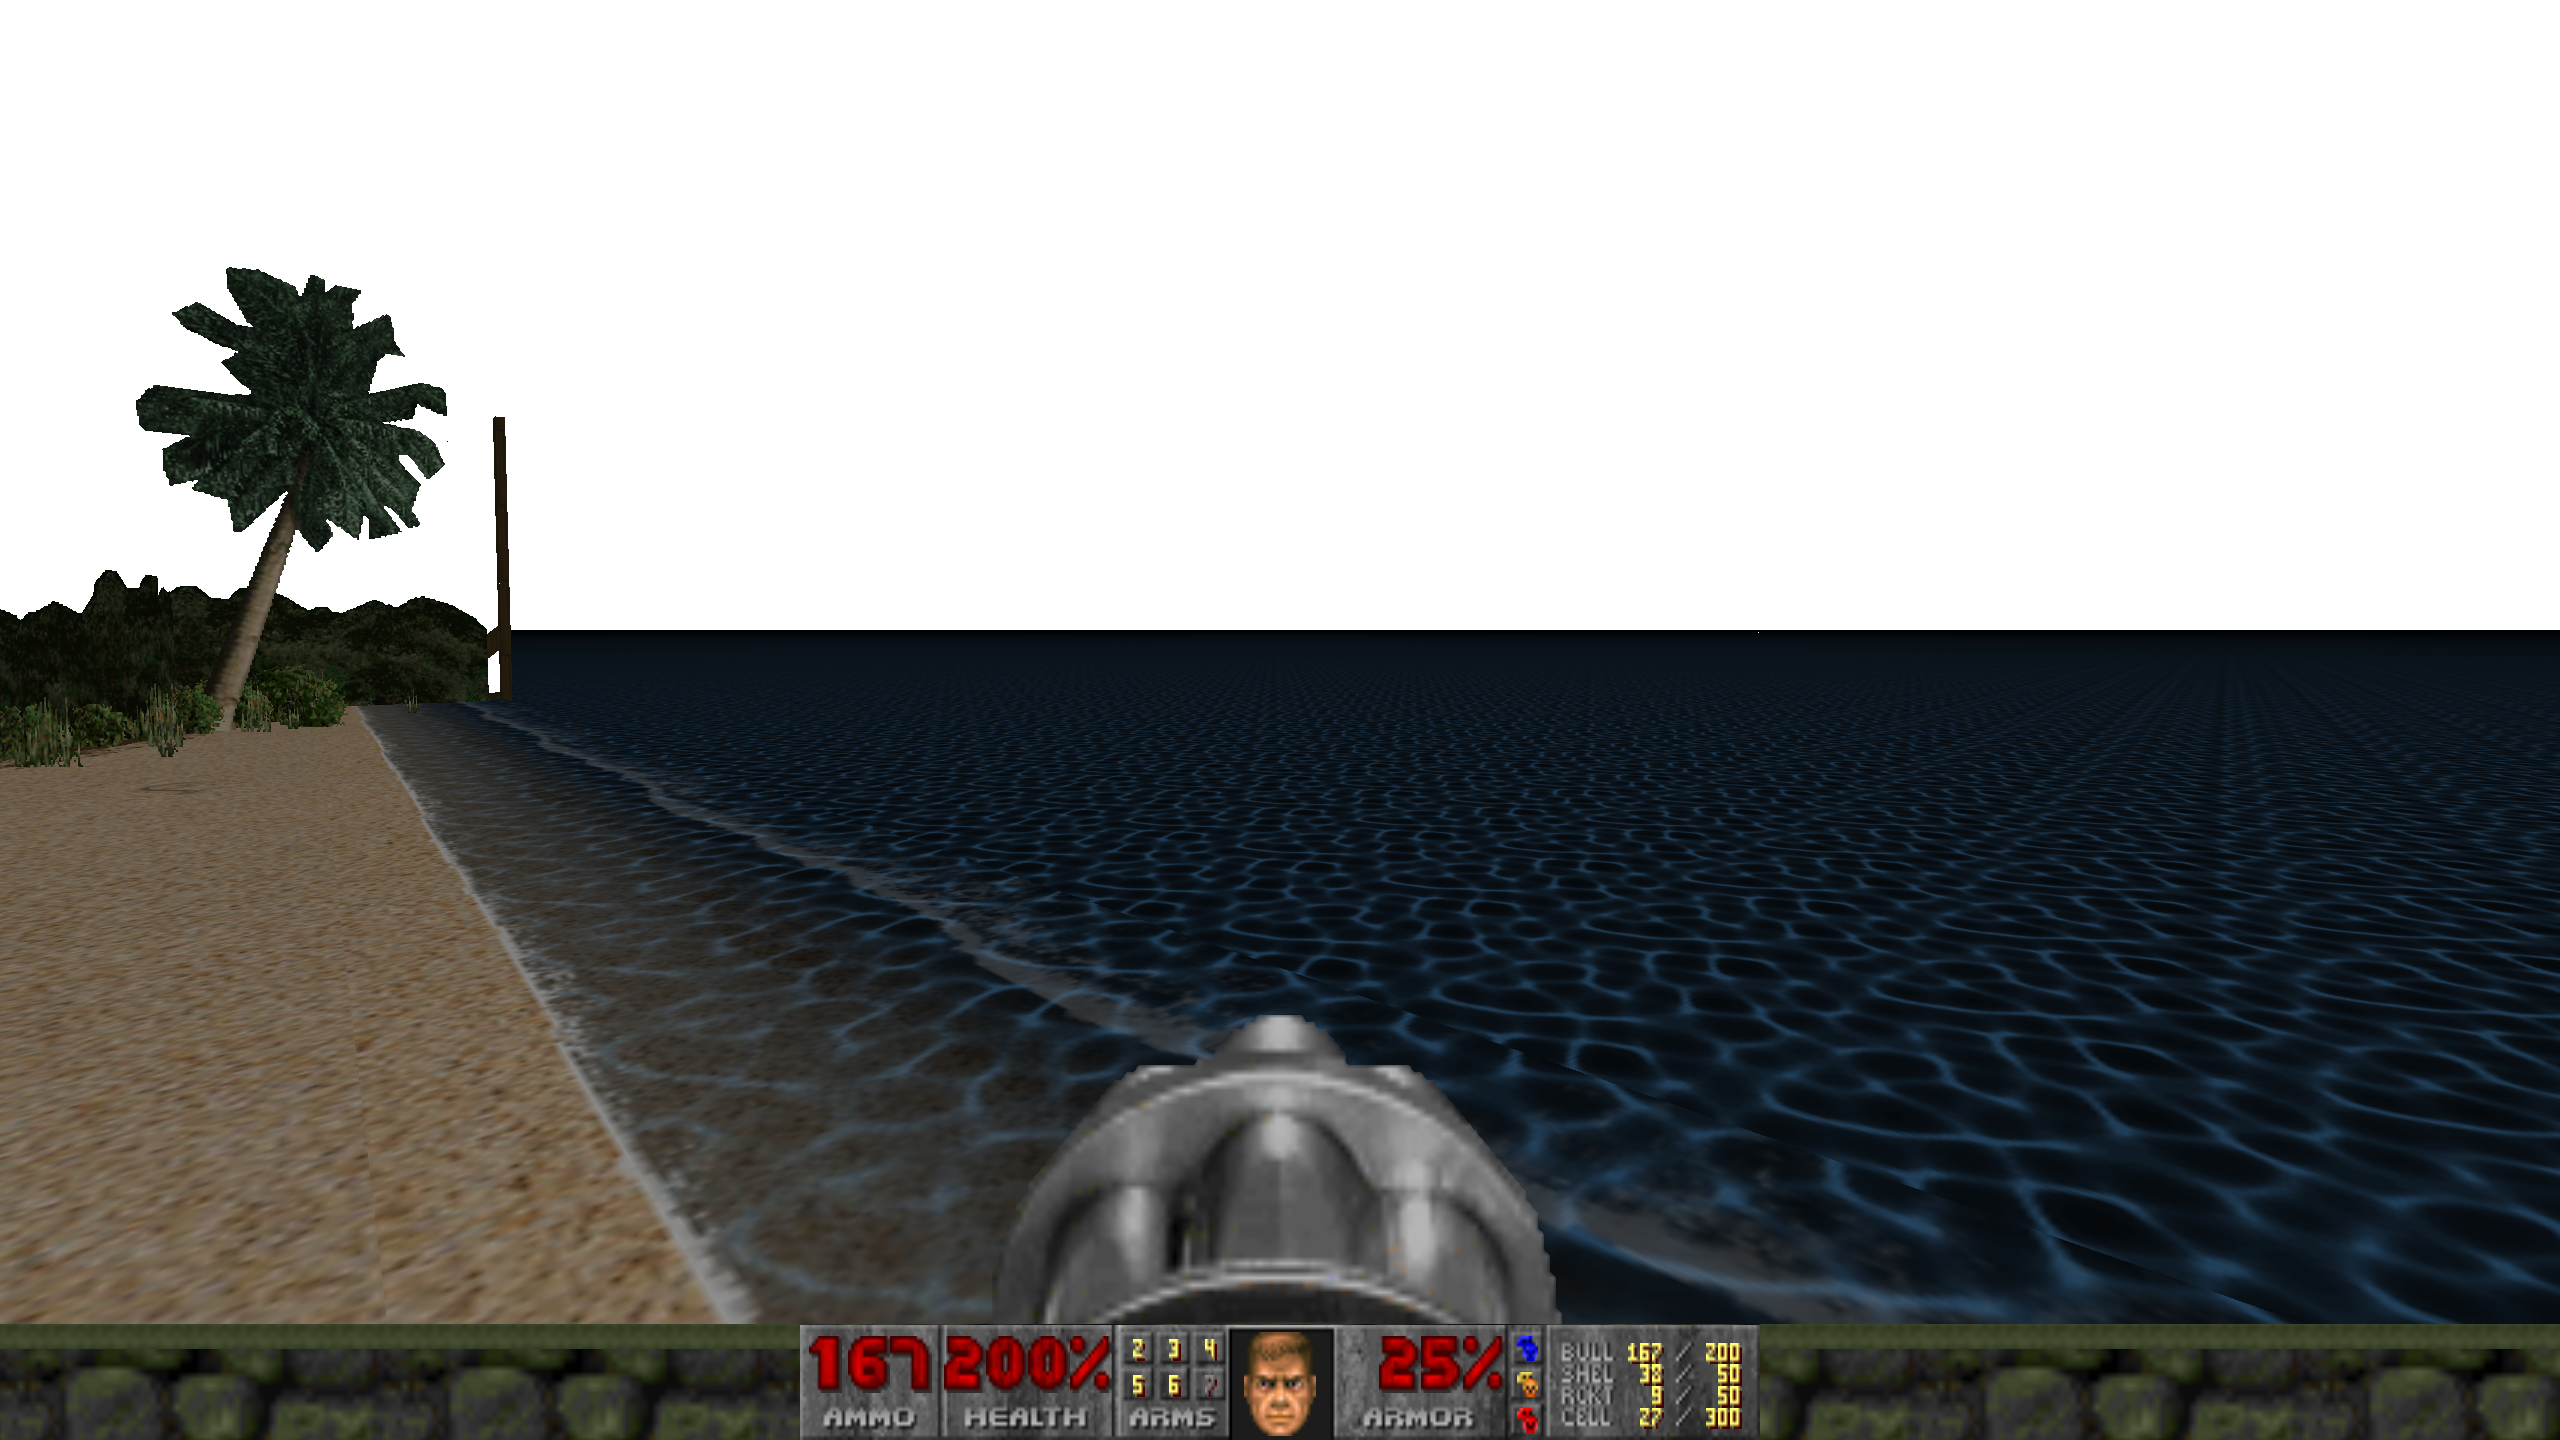 Le joueur regarde depuis une plage de Myhouse.wad.  Cela ressemble à une scène de jeu inachevée, avec la mer plate s’étendant dans un vide blanc sans relief.